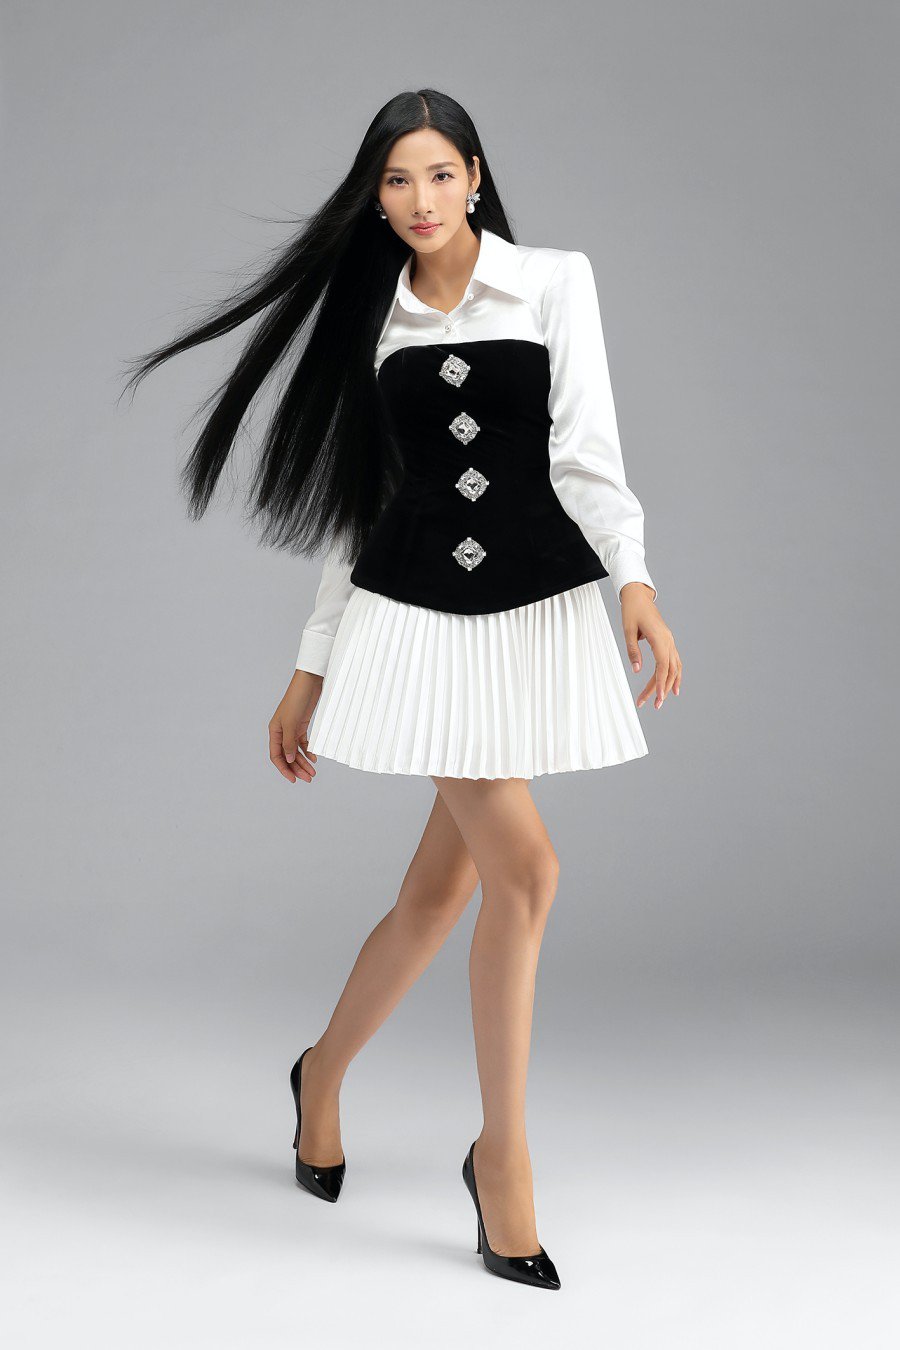 Chung Thanh Phong gợi ý biến hóa phong cách từ đi làm đến khi dự tiệc chỉ trong một set đồ. Chỉ cần mặc corset bên ngoài trang phục công sở gồm sơ mi trắng và chân váy xếp ly, các cô gái đã có bộ cánh dự tiệc hấp dẫn.